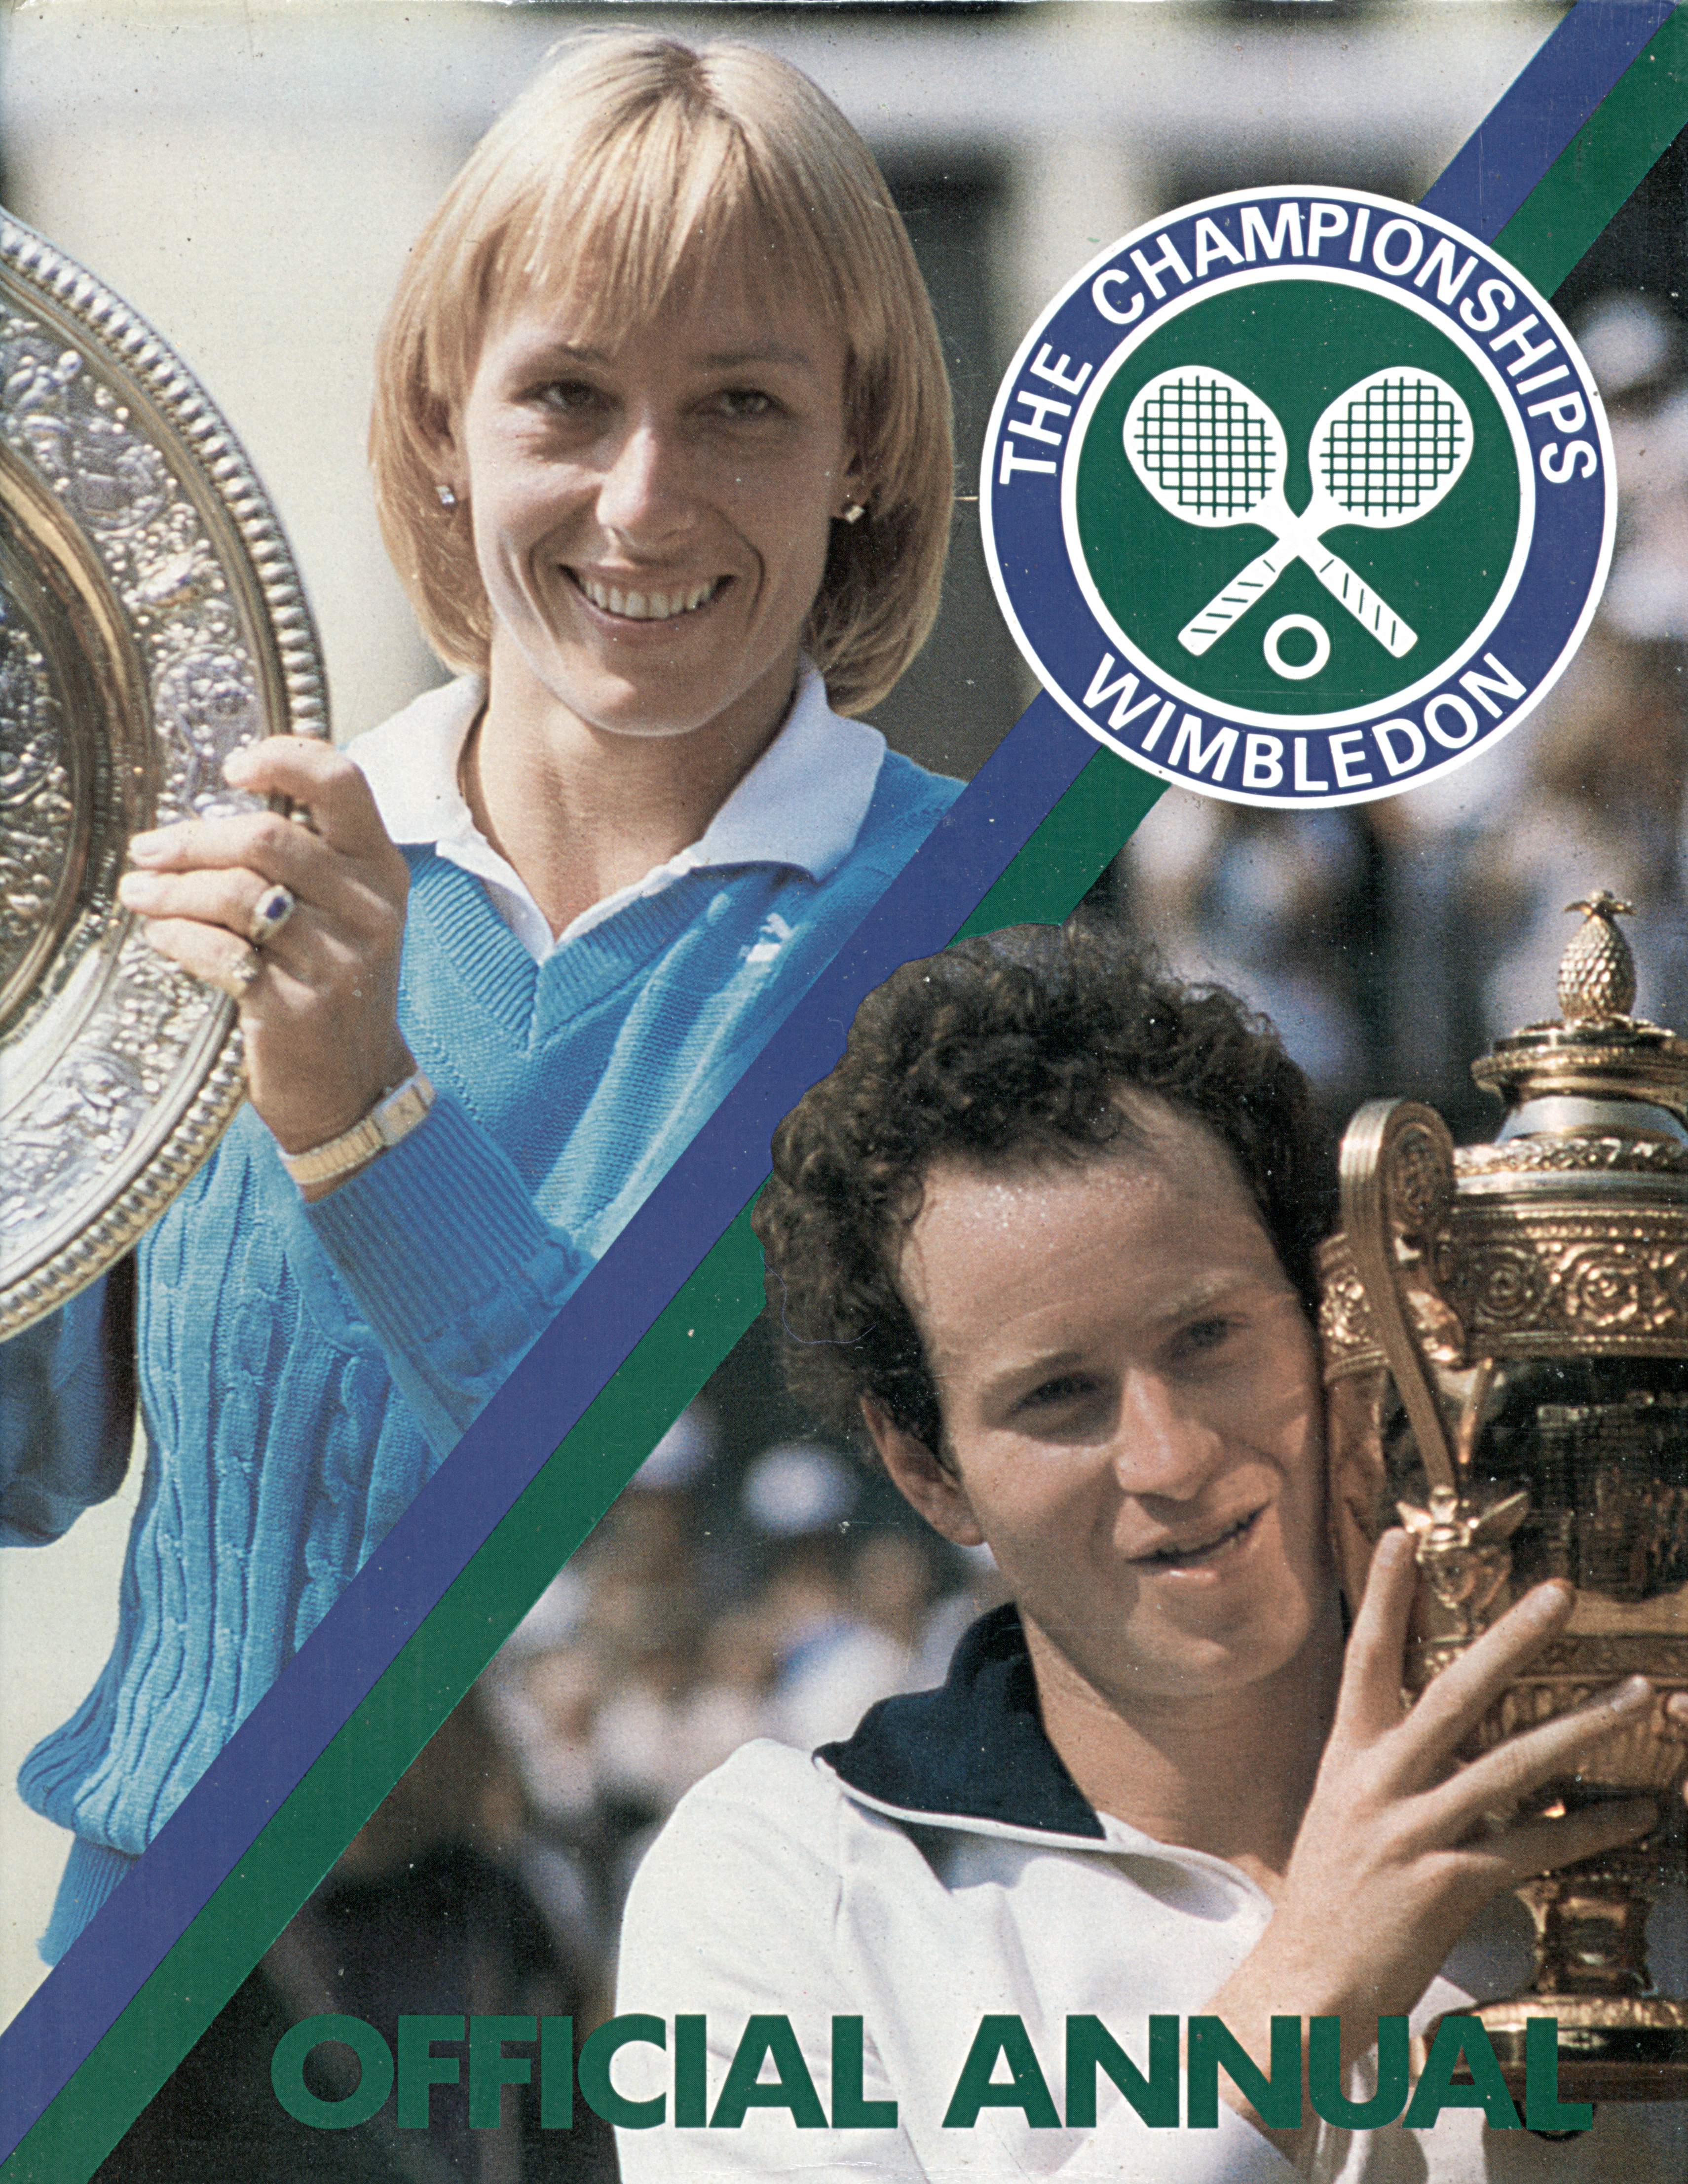 The Championships Wimbledon 1984